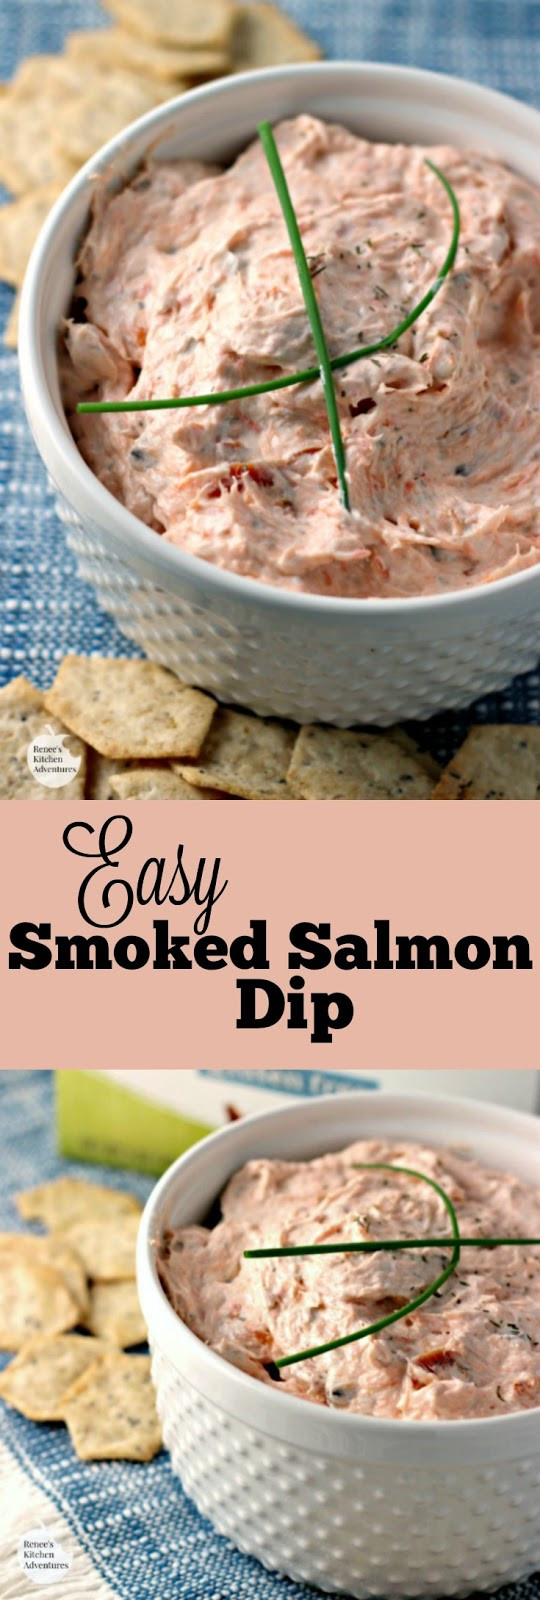 Smoked Salmon Dip Recipe
 Easy Smoked Salmon Dip